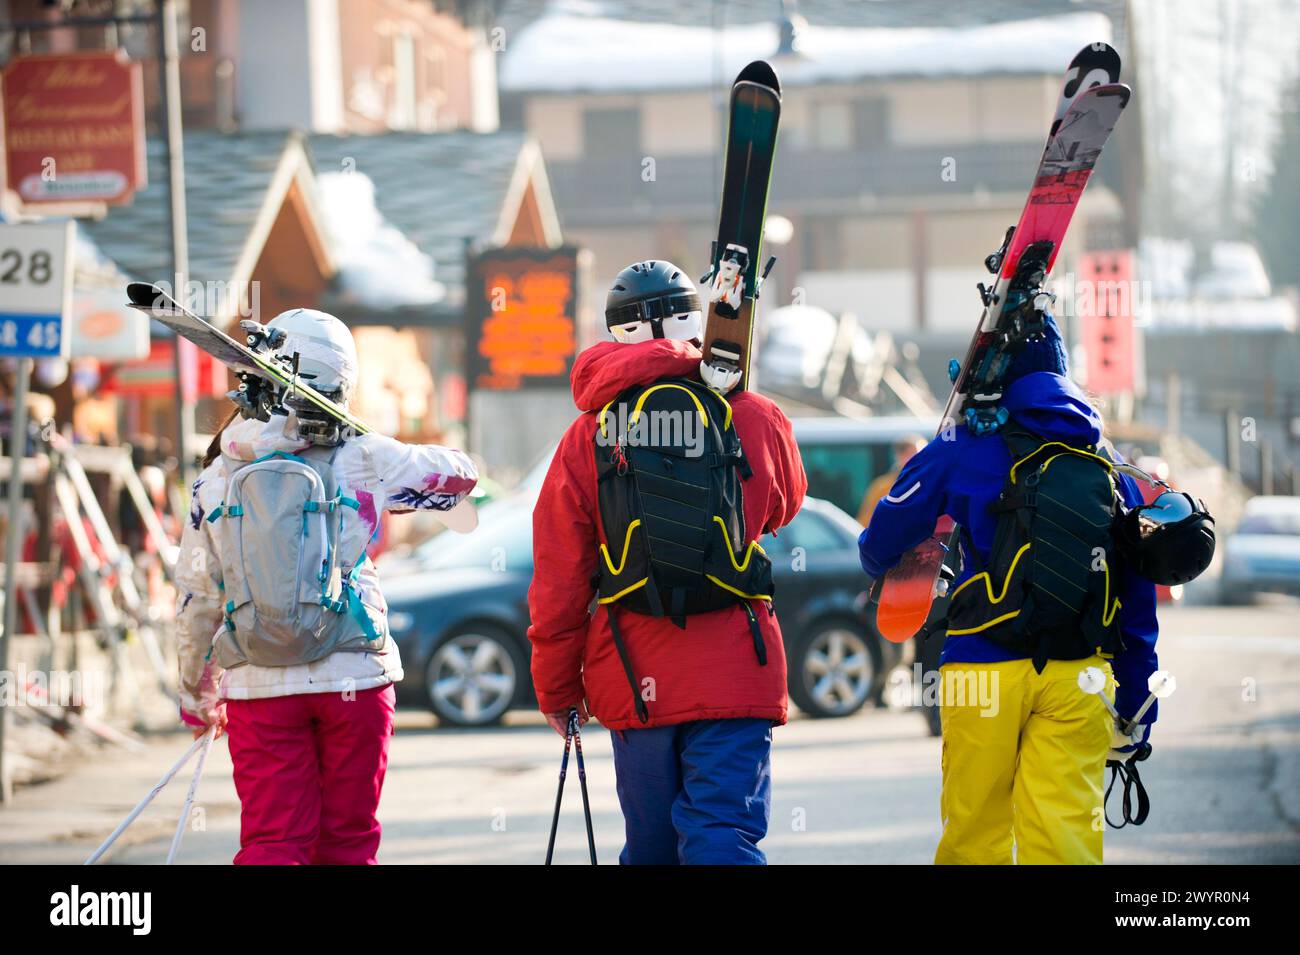 Trois skieurs marchant dans la rue dans le village italien Champoluc en Italie. Banque D'Images